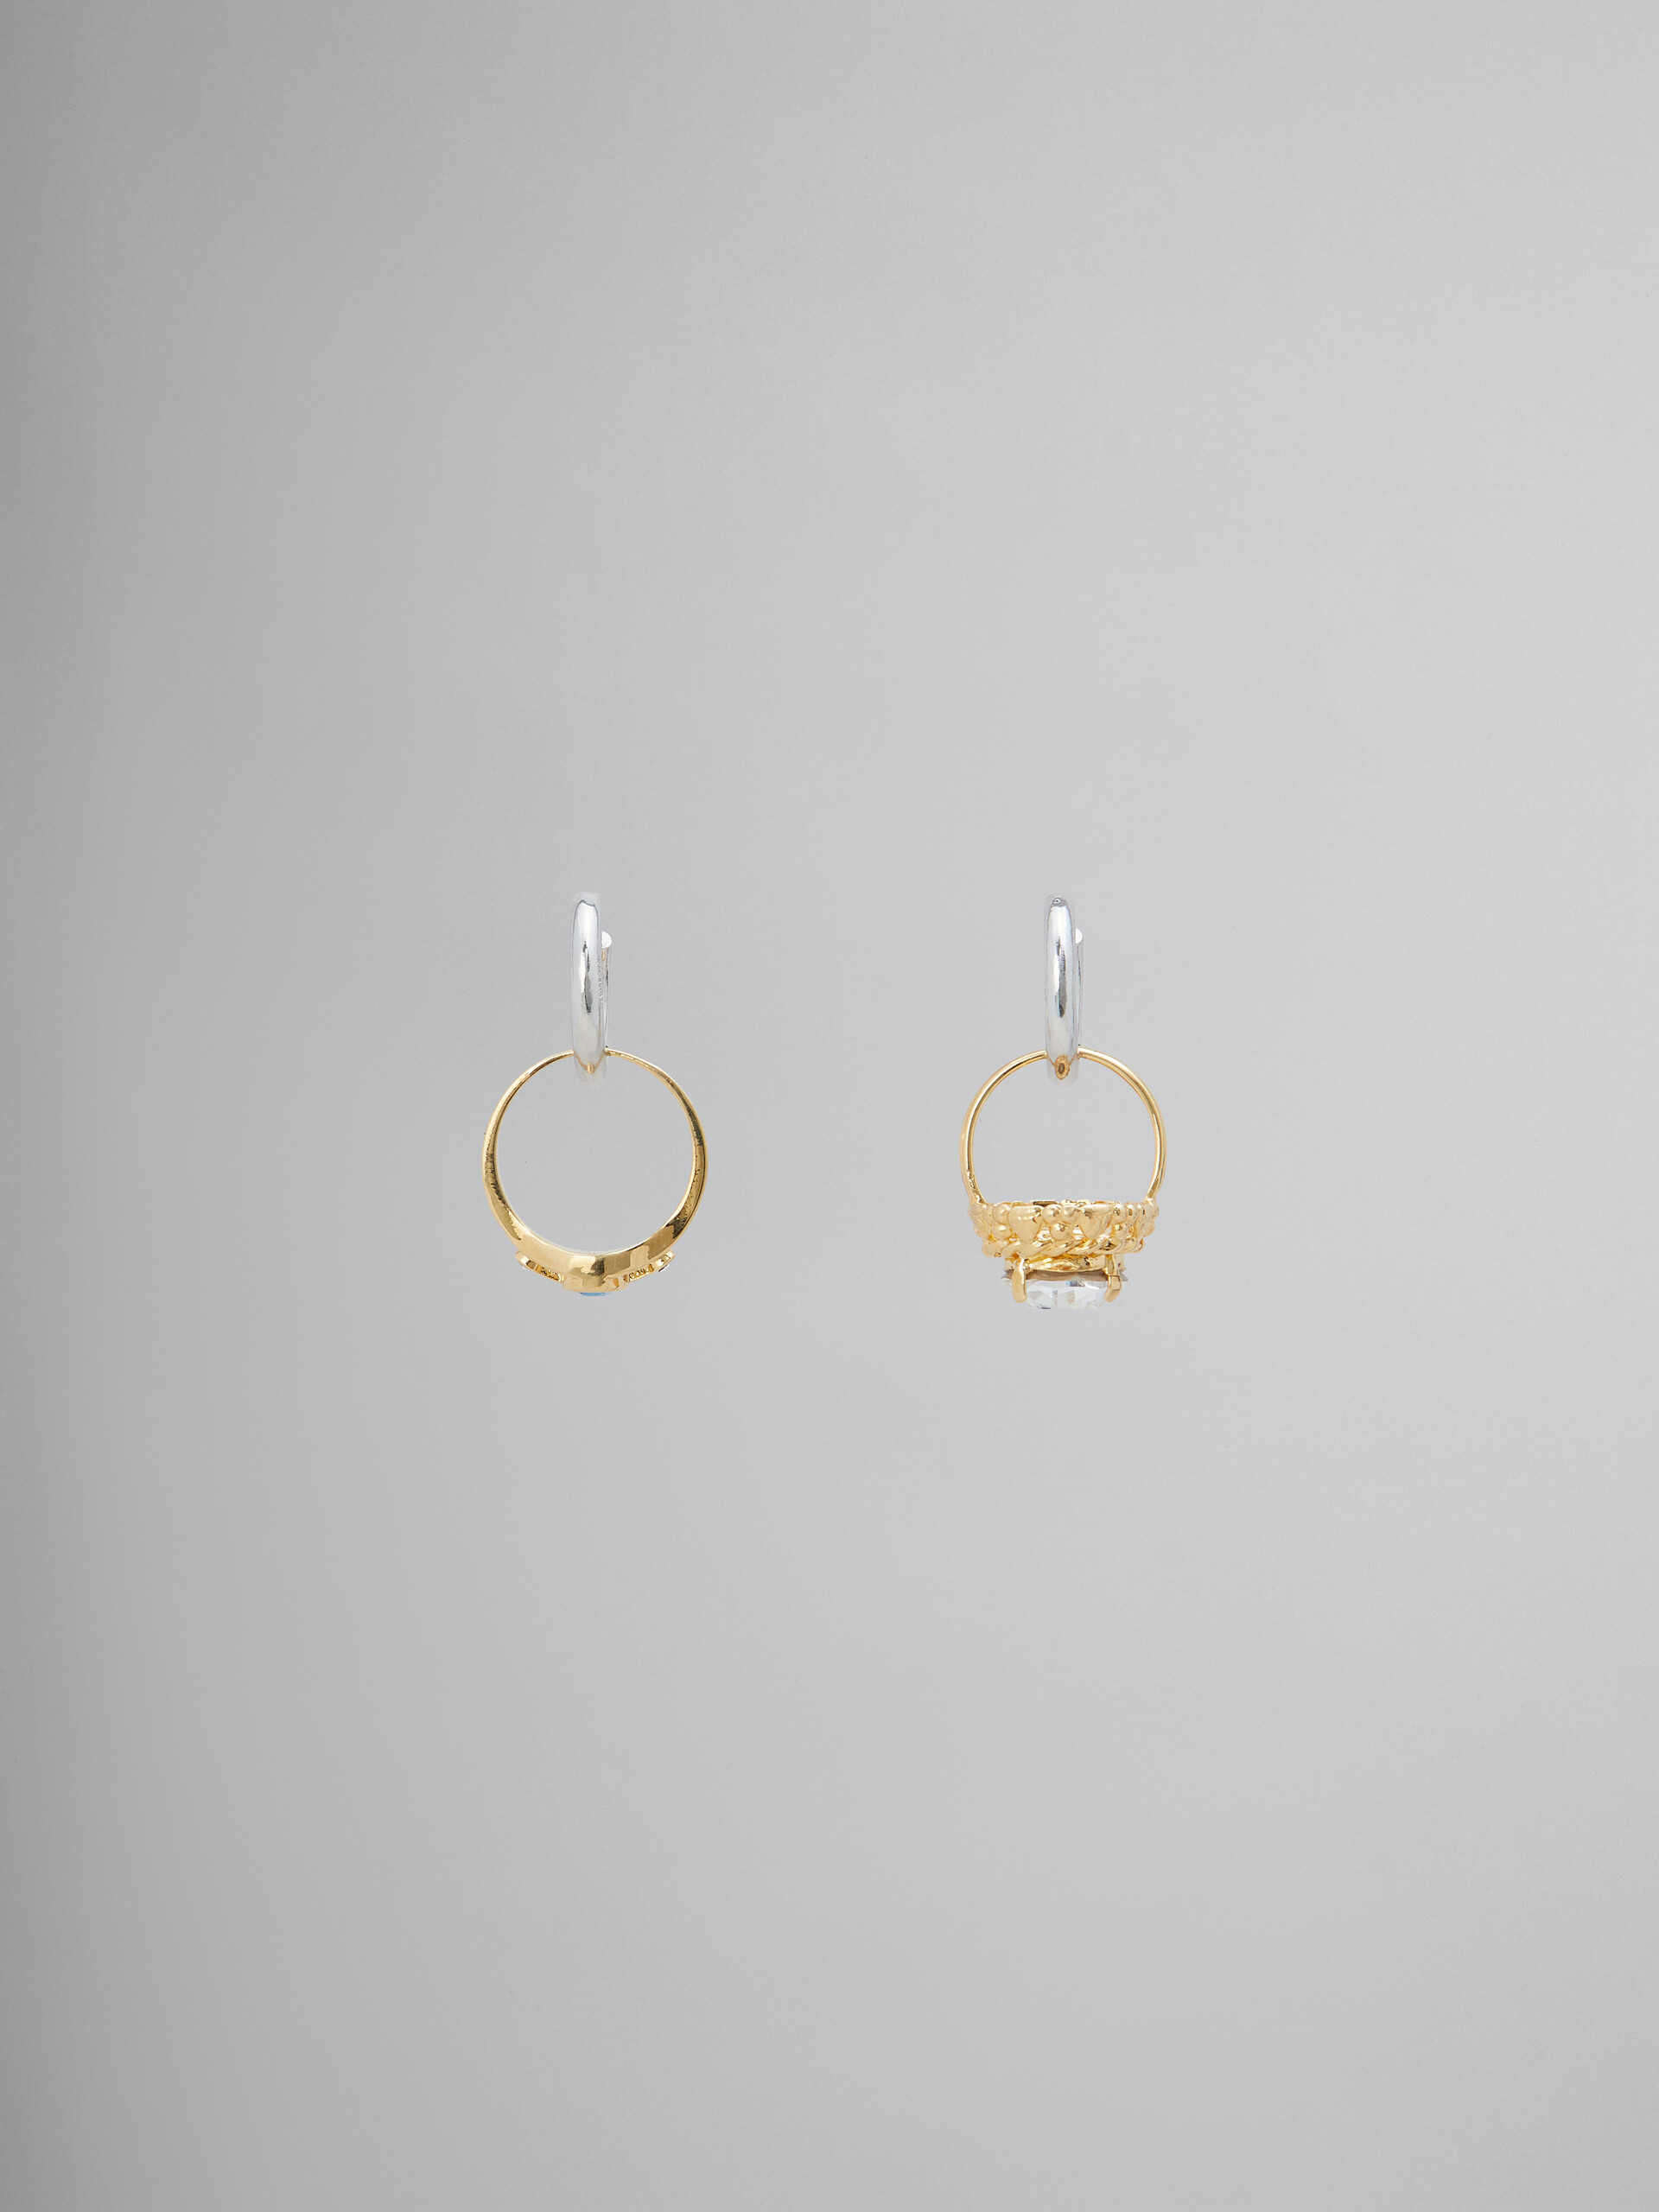 Hoop earrings with mismatched rings - Earrings - Image 1